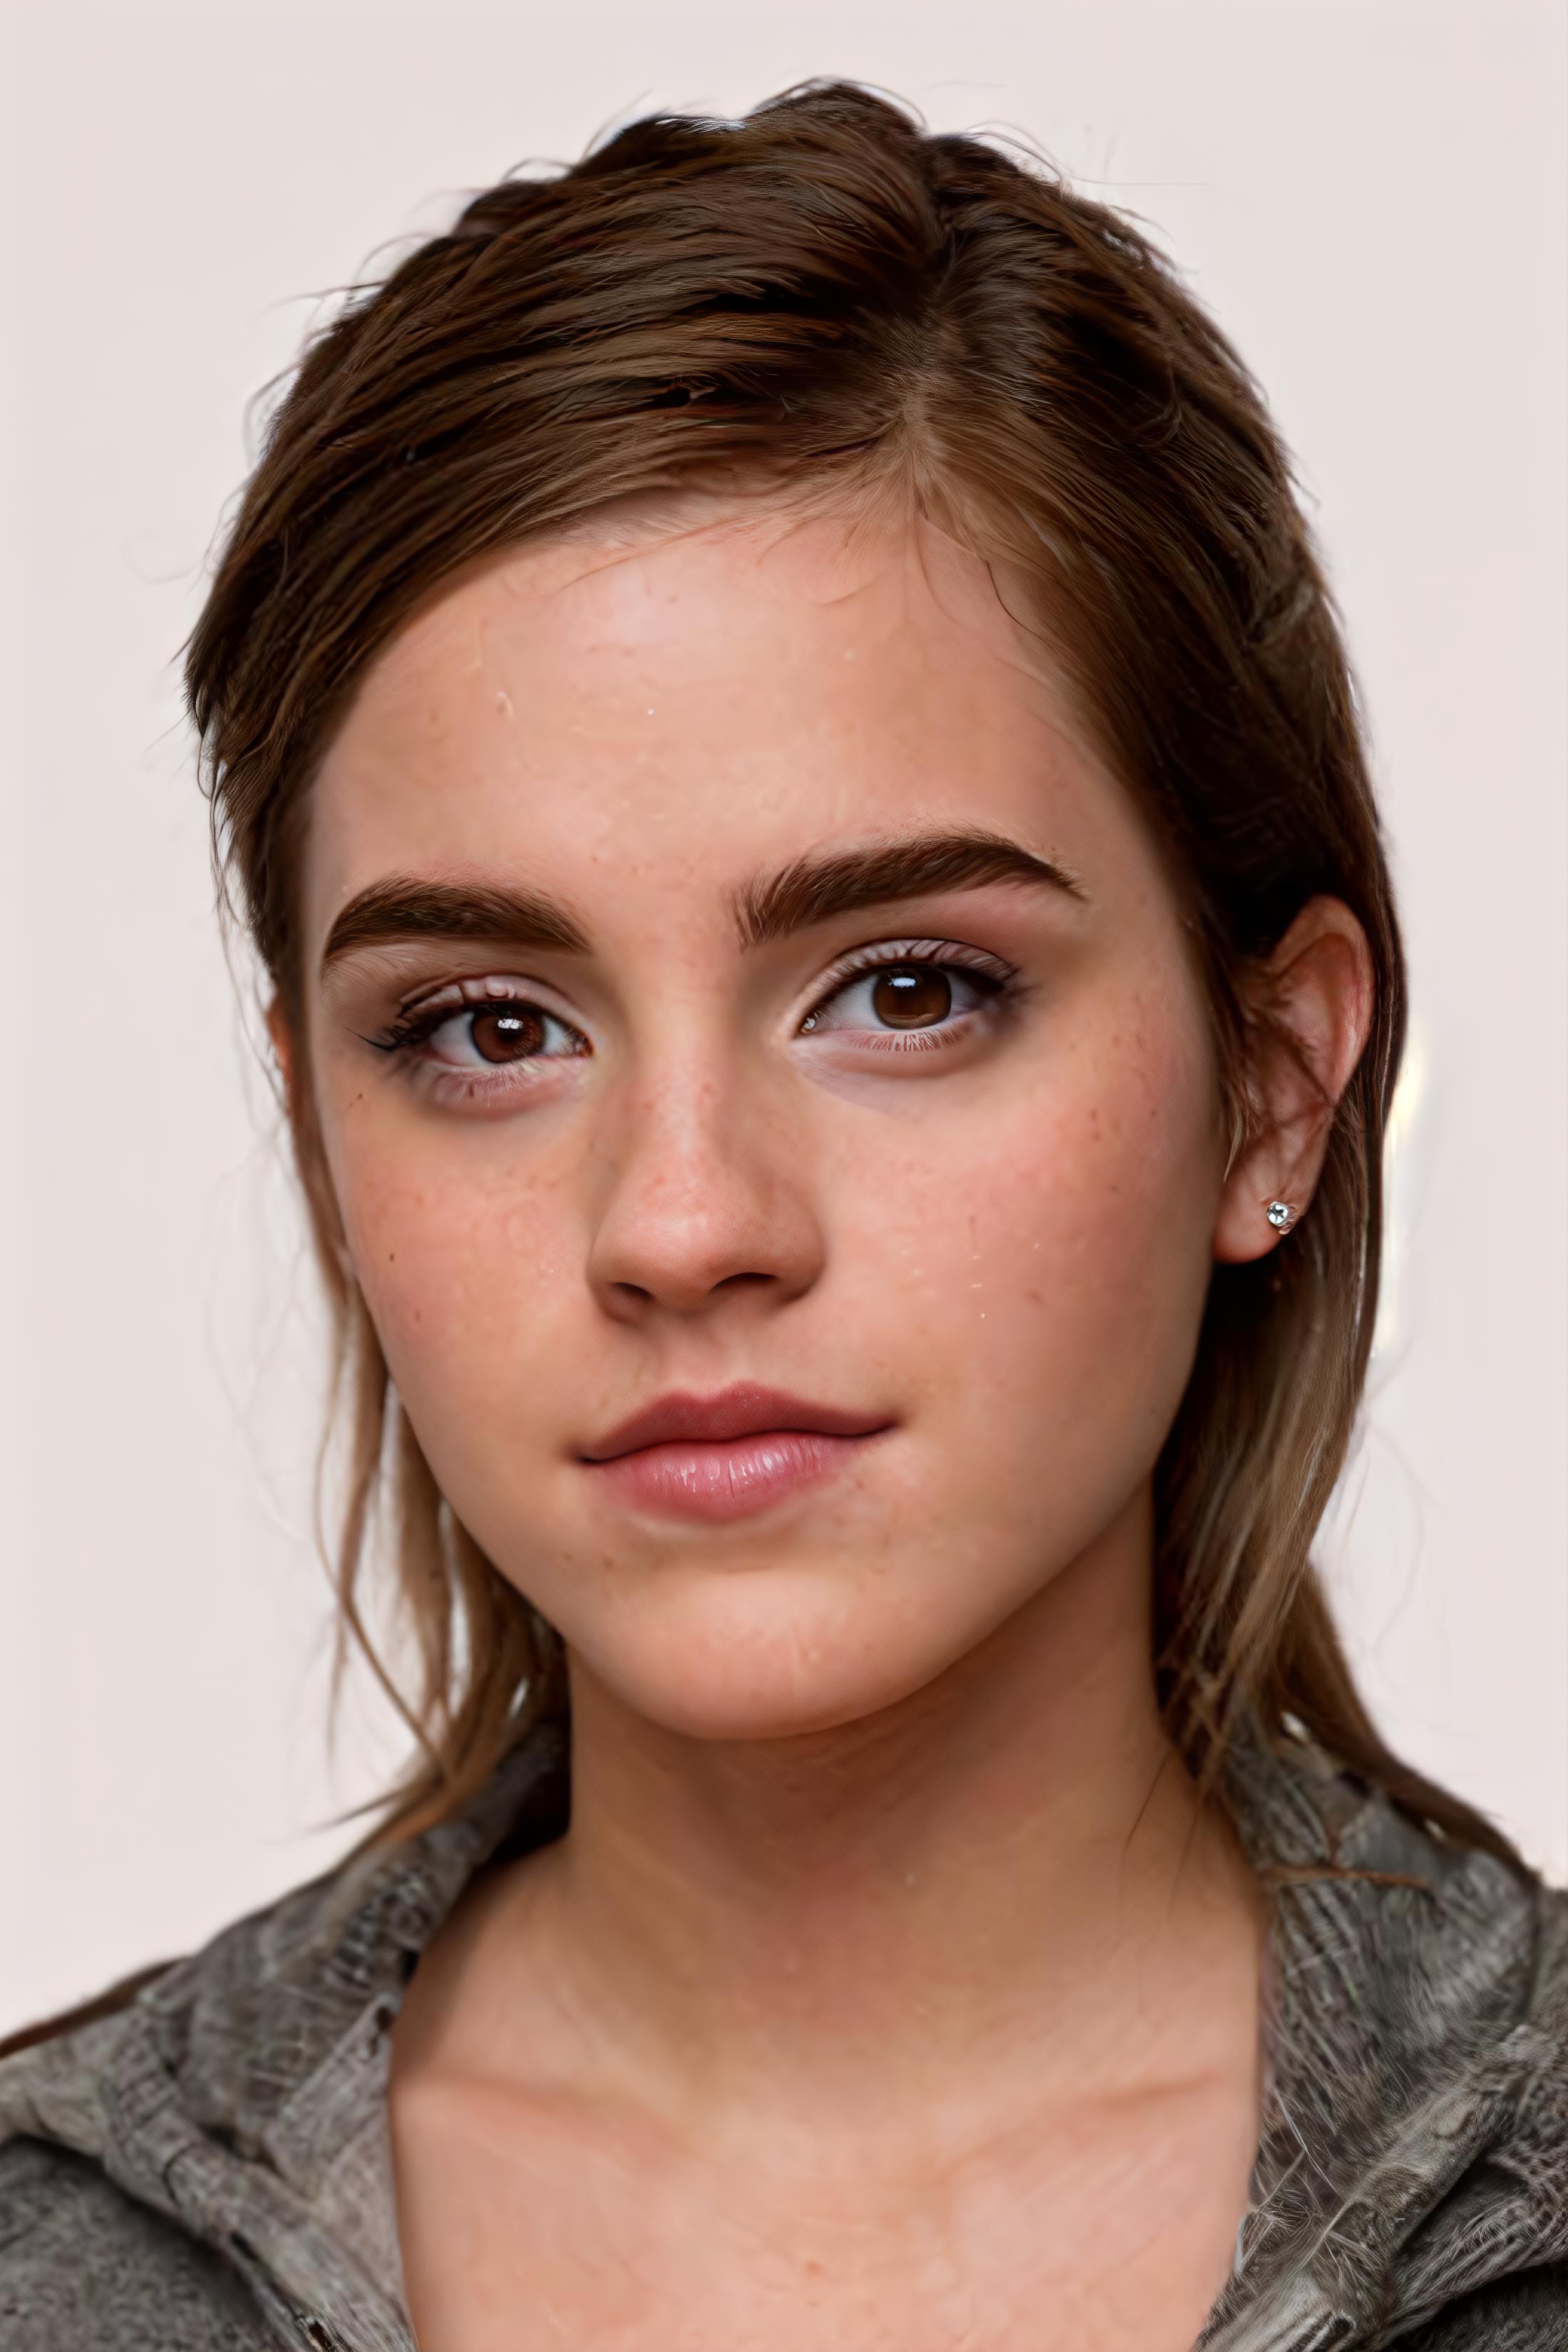 Emma Watson / Hermione Granger image by __2_